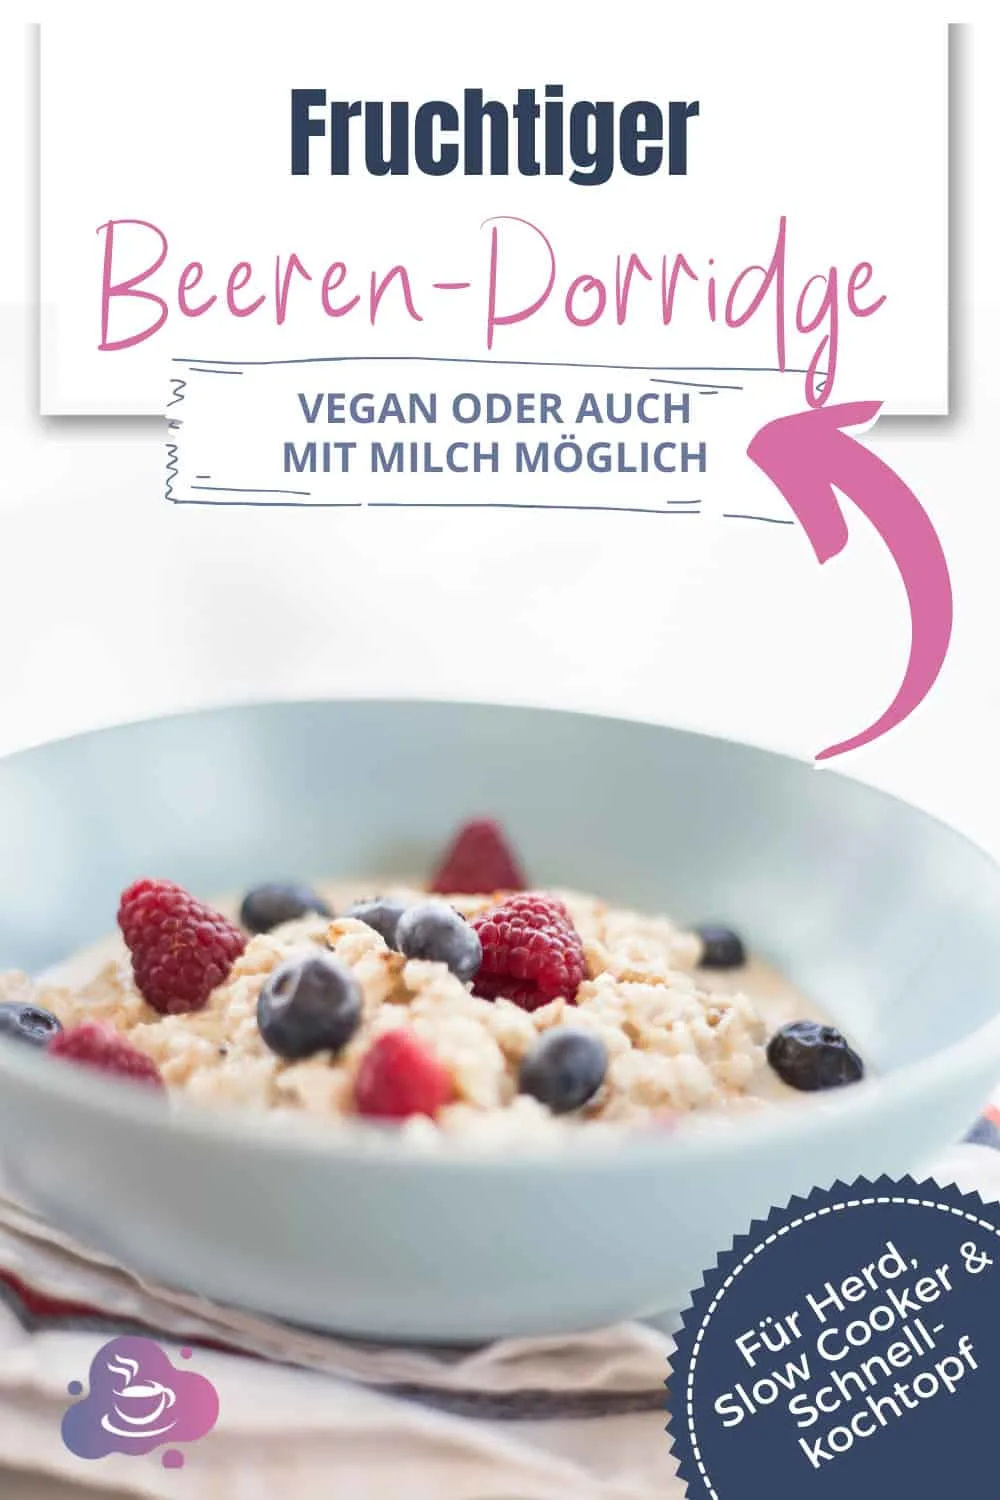 Beeren-Porridge